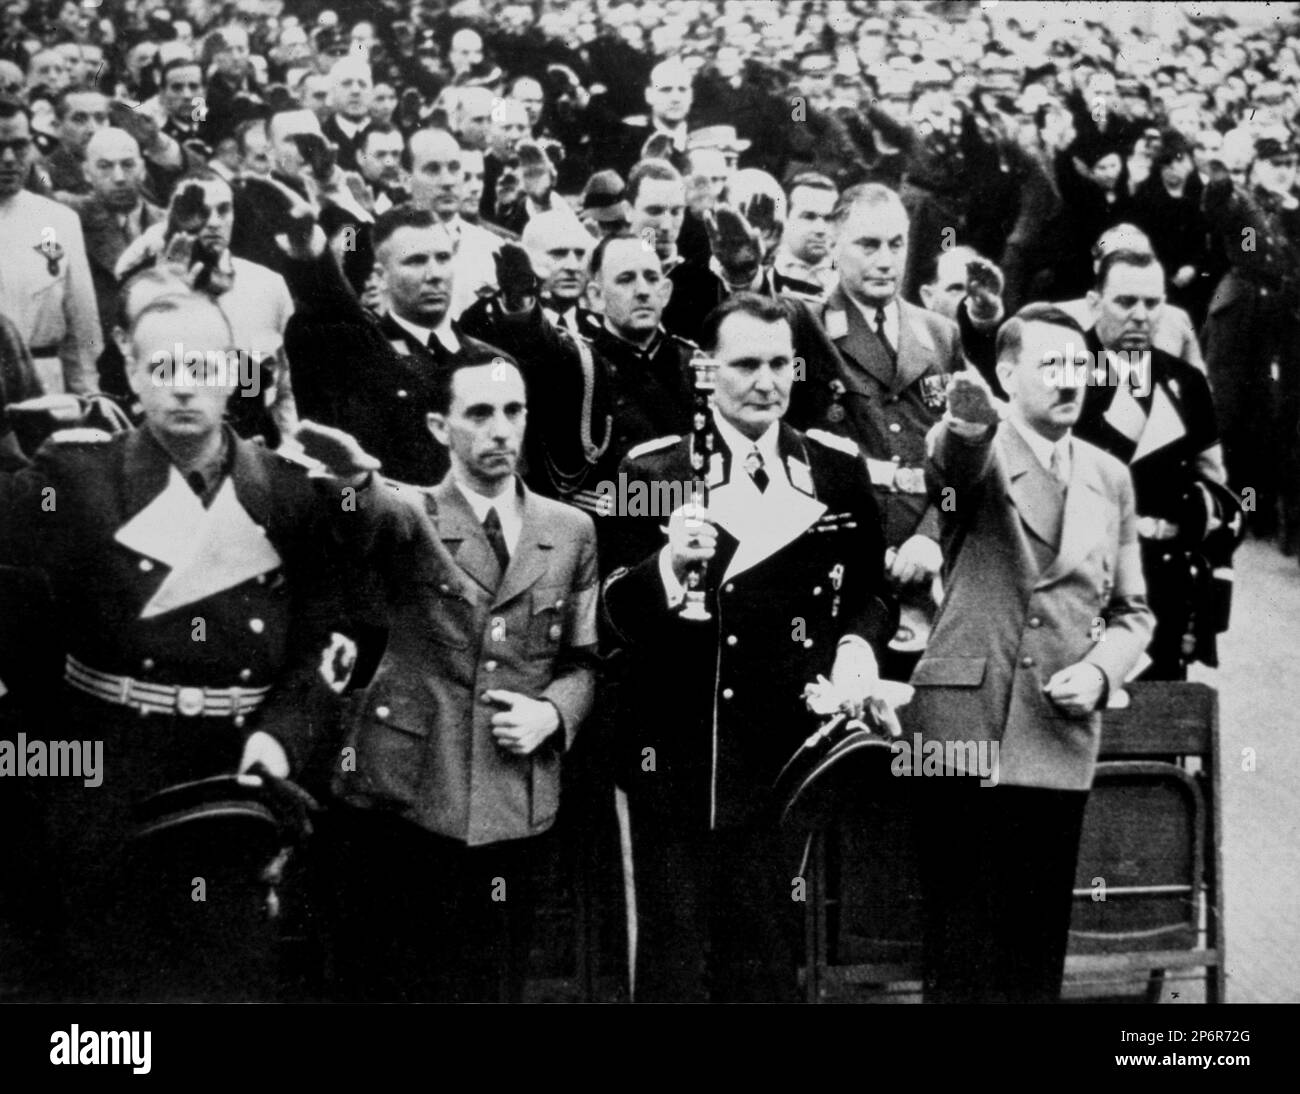 1930, GERMANIA : il dittatore tedesco ADOLF HITLER ( 1889 - 1945 ) con HERMANN GOERING ( 1893 - 1946 ), JOSEPH GOEBBELS ( 1897 - 1945 ) e JOACHIM VON RIBBENTROP ( 1893 - 1946 ). - Seconda guerra mondiale - NAZISTA - NAZISTA - SECONDA GUERRA Mondiale - NAZISMO - NAZISTA - ditatore - baffi - baffi - POLITICA - POLITICO - ritrato - ritratto - svastica - cravatta - cravatta - colletto - colletto --- Archivio GBB Foto Stock